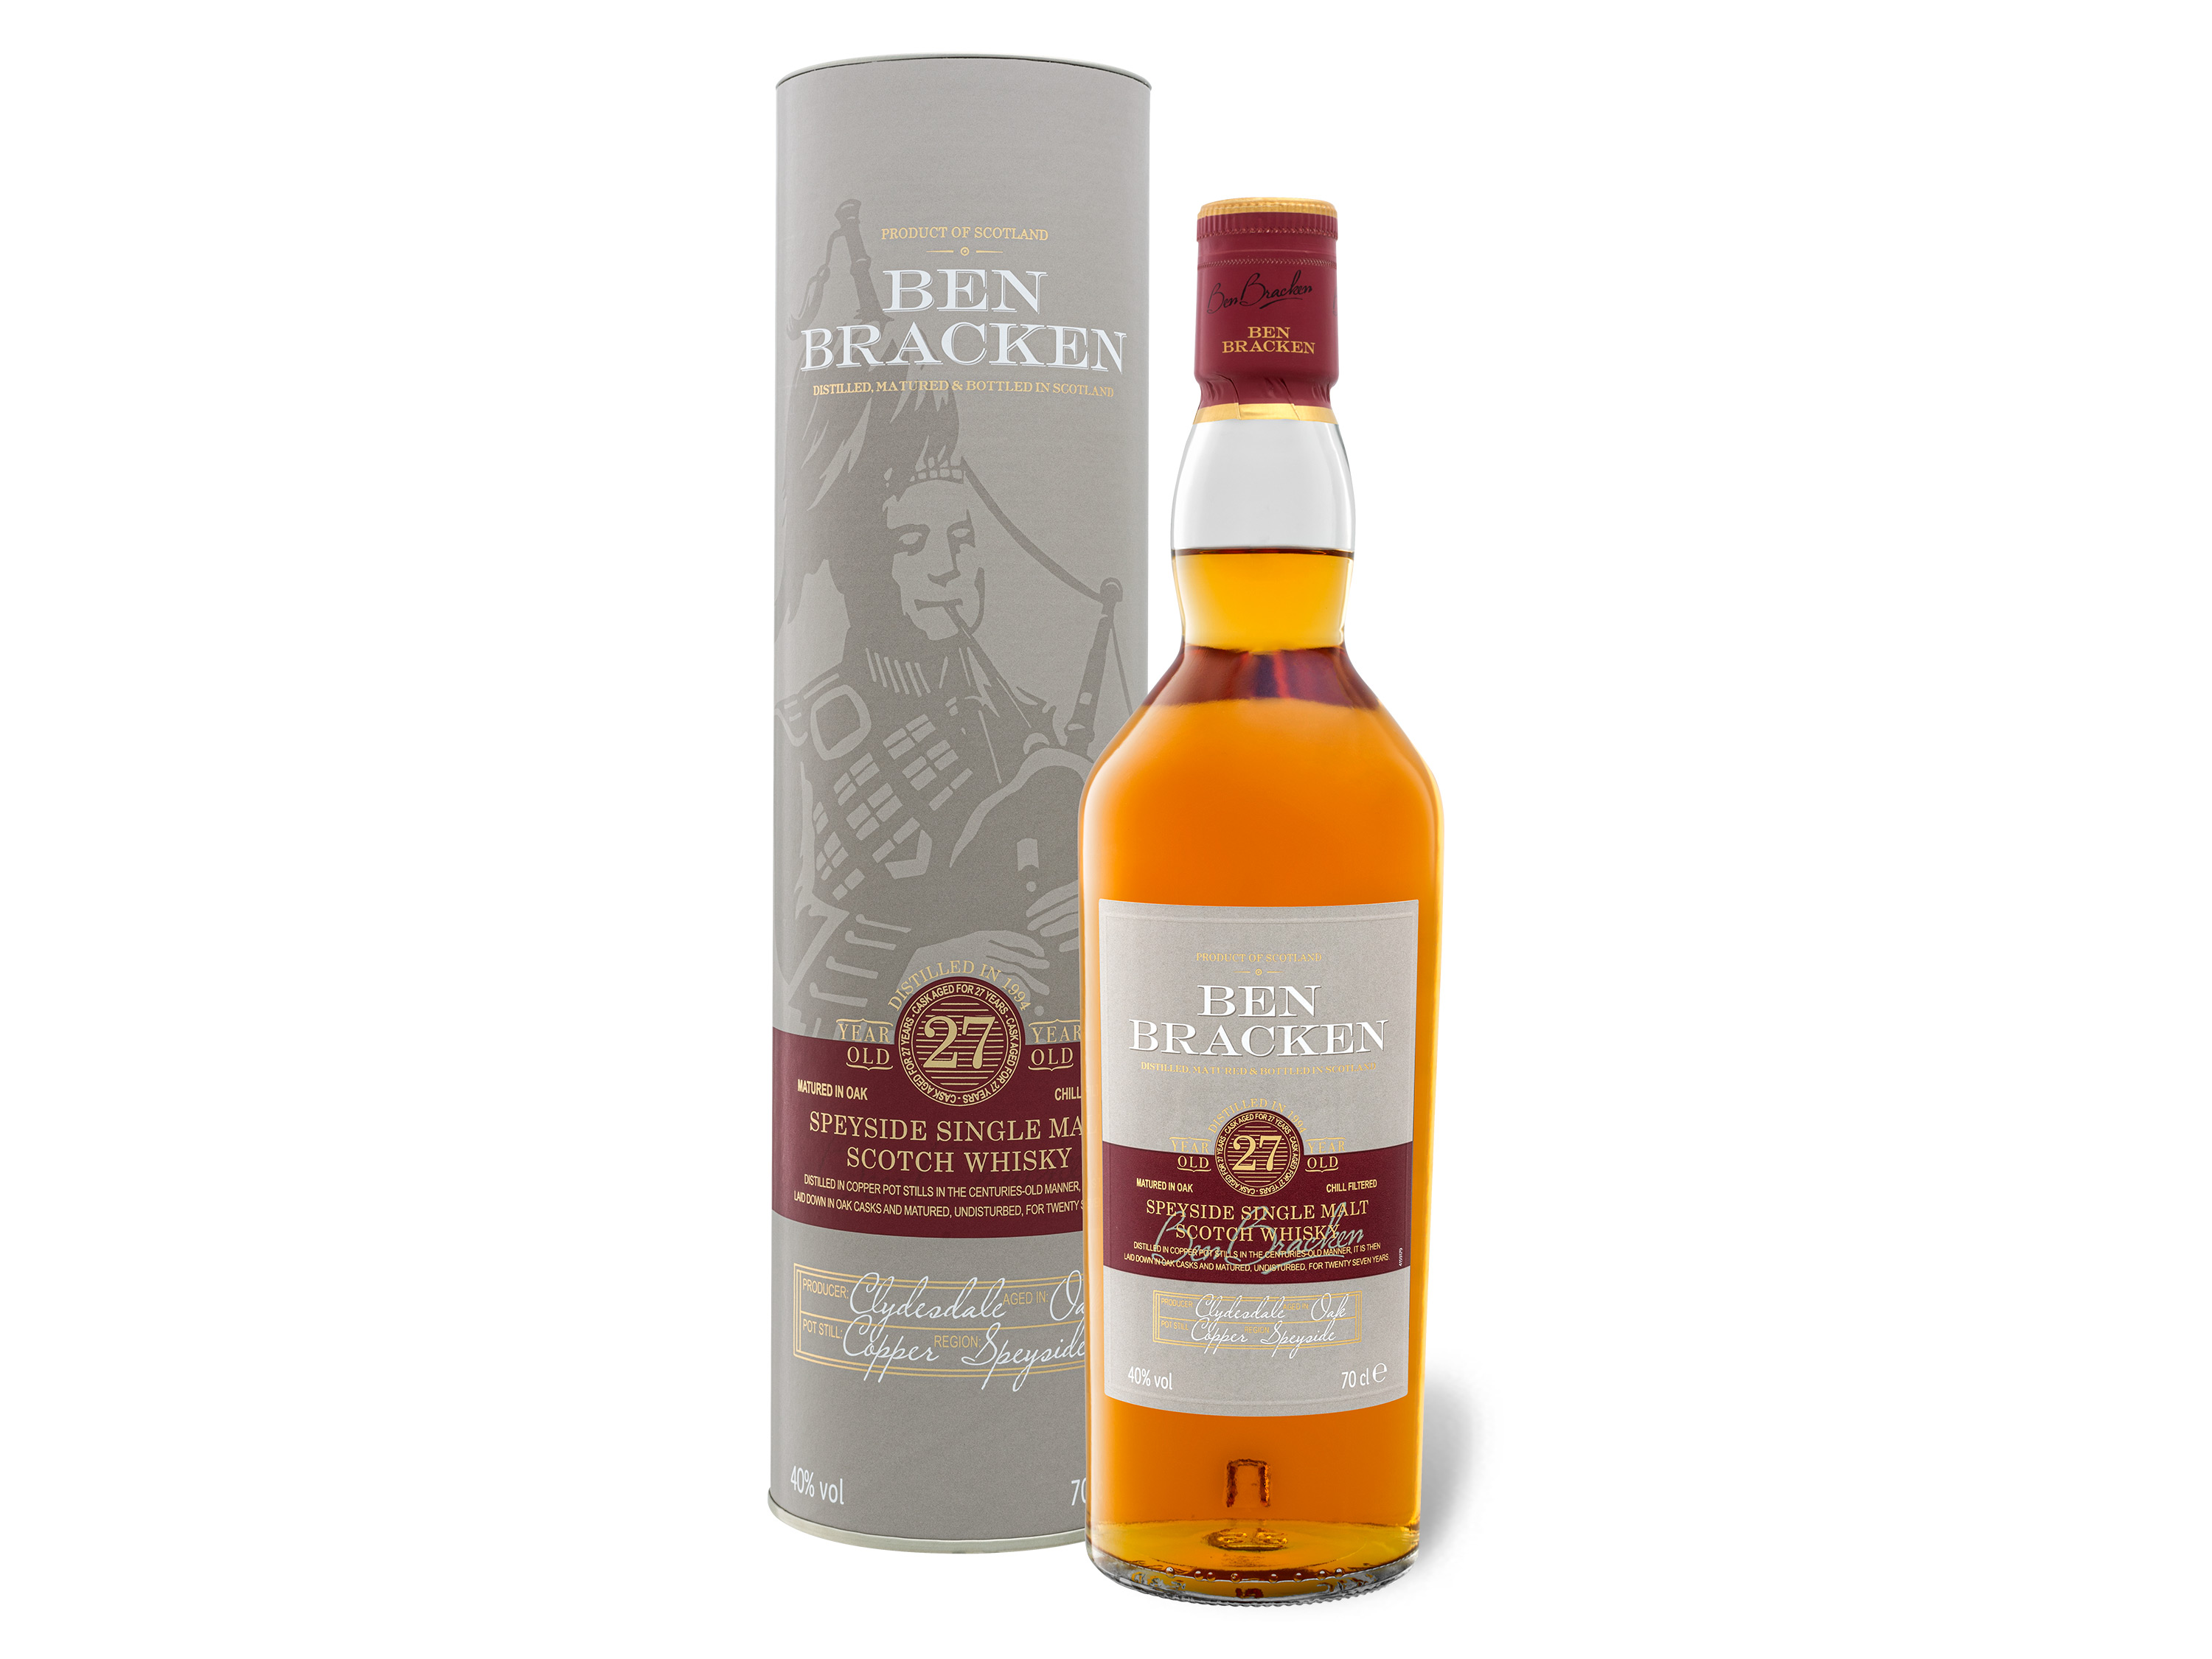 Ben Bracken Speyside Single Malt Scotch Whisky 27 Jahre mit Geschenkbox 40% Vol